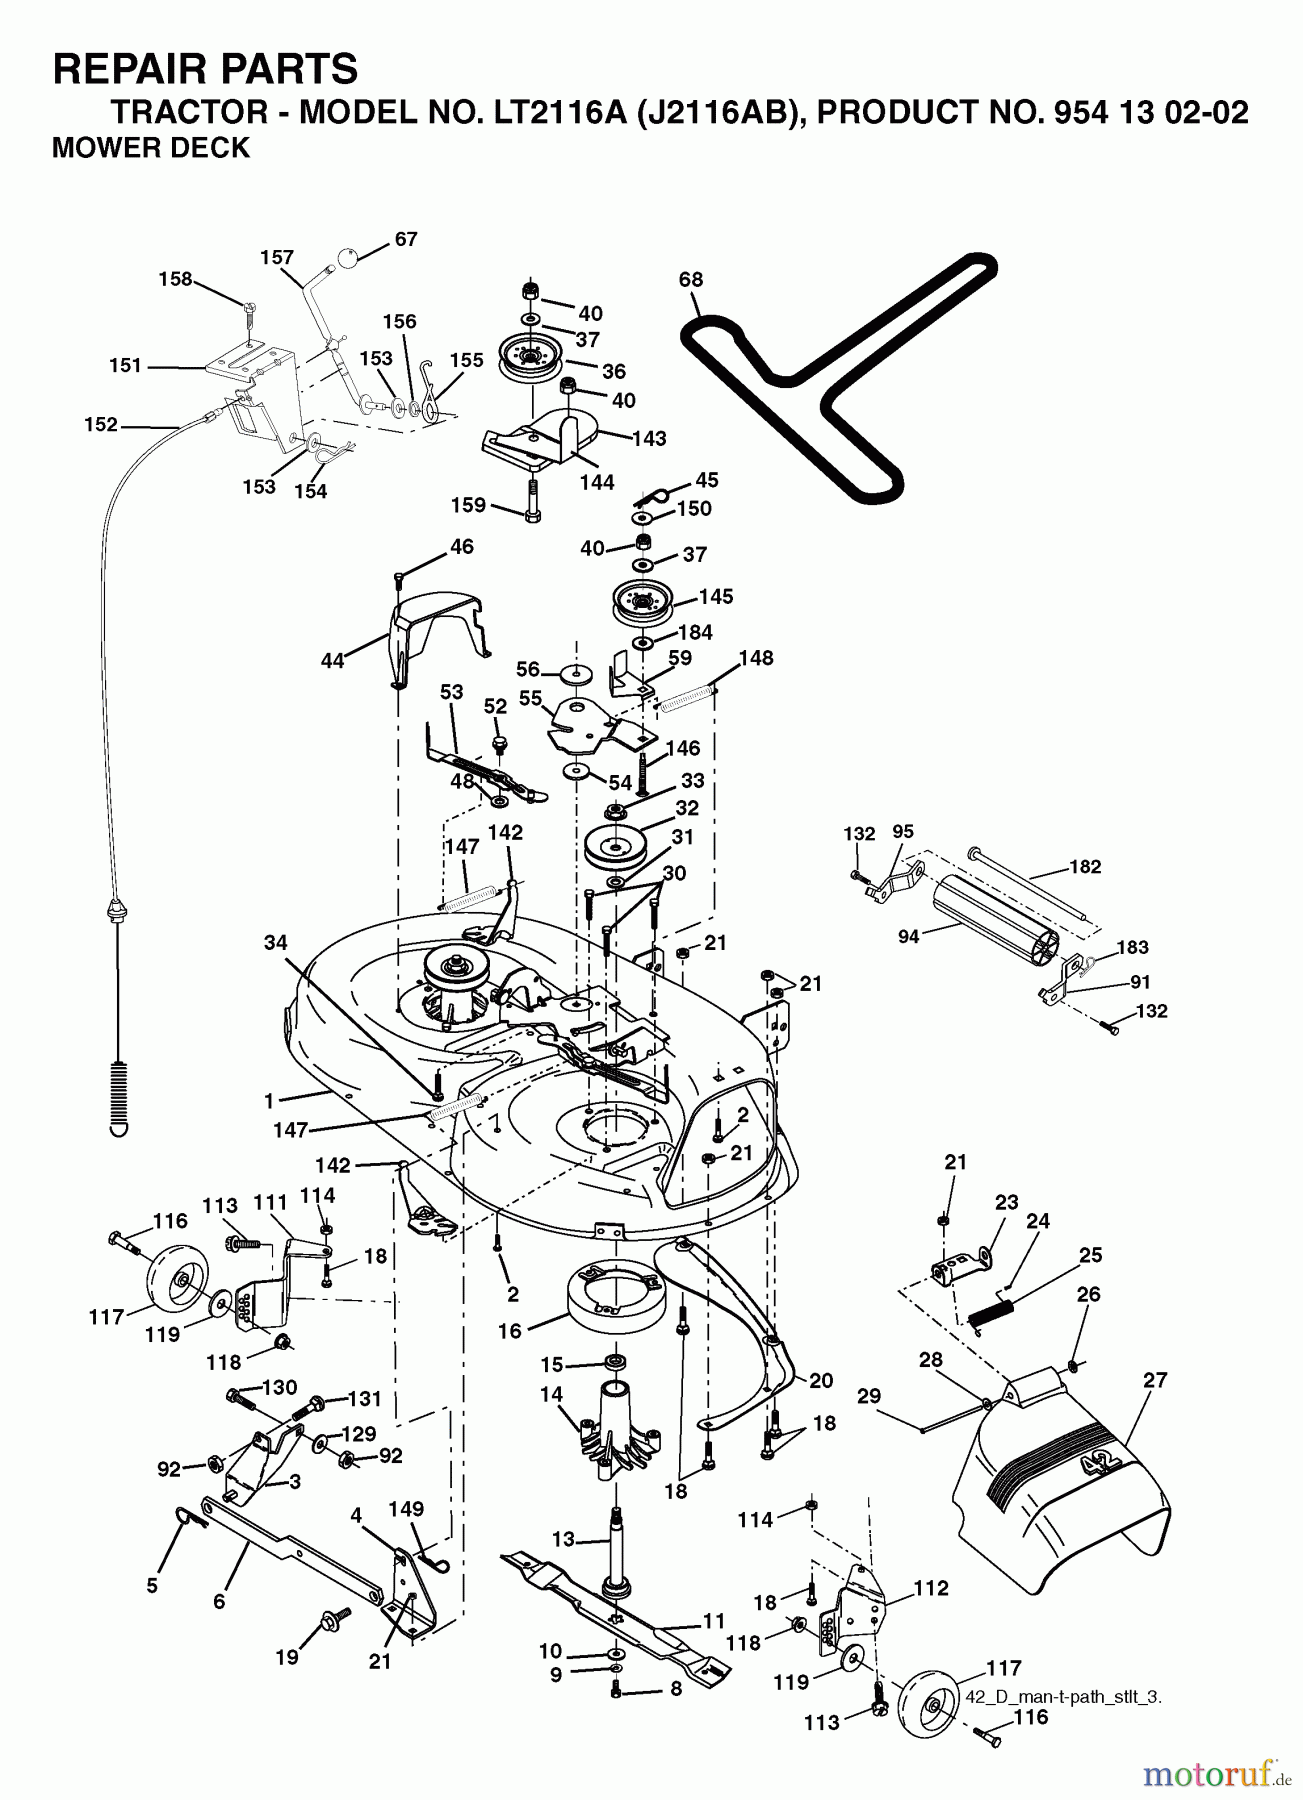  Jonsered Rasen  und Garten Traktoren LT2116 A (J2116AB, 954130202) - Jonsered Lawn & Garden Tractor (2003-01) MOWER DECK / CUTTING DECK